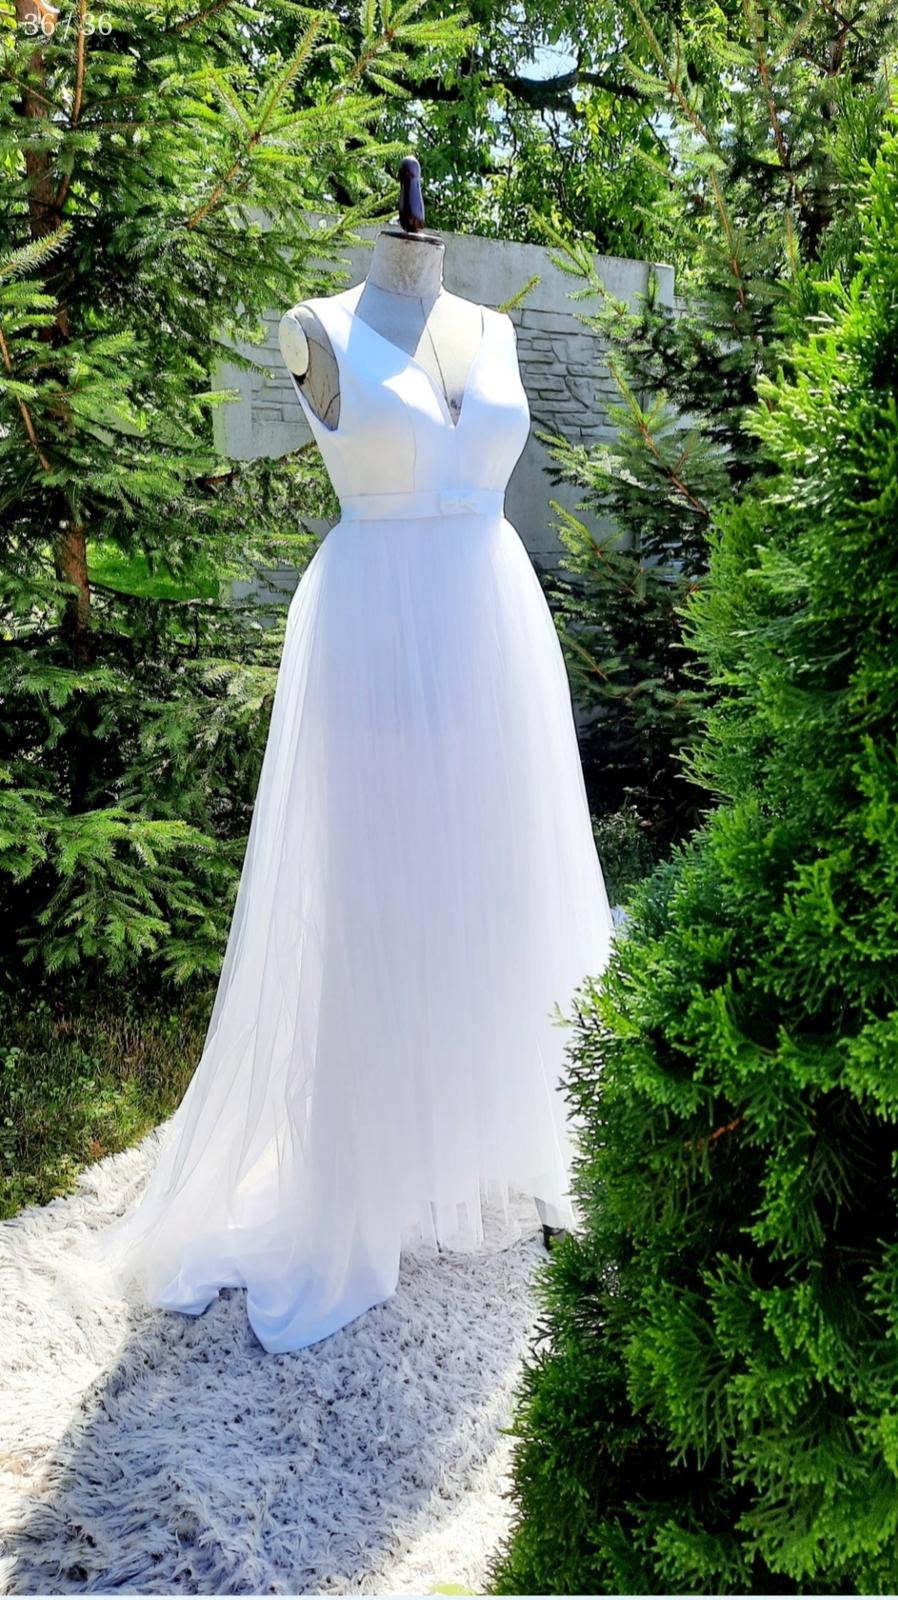 Bílé šaty s vlečkou - Obrázek č. 1